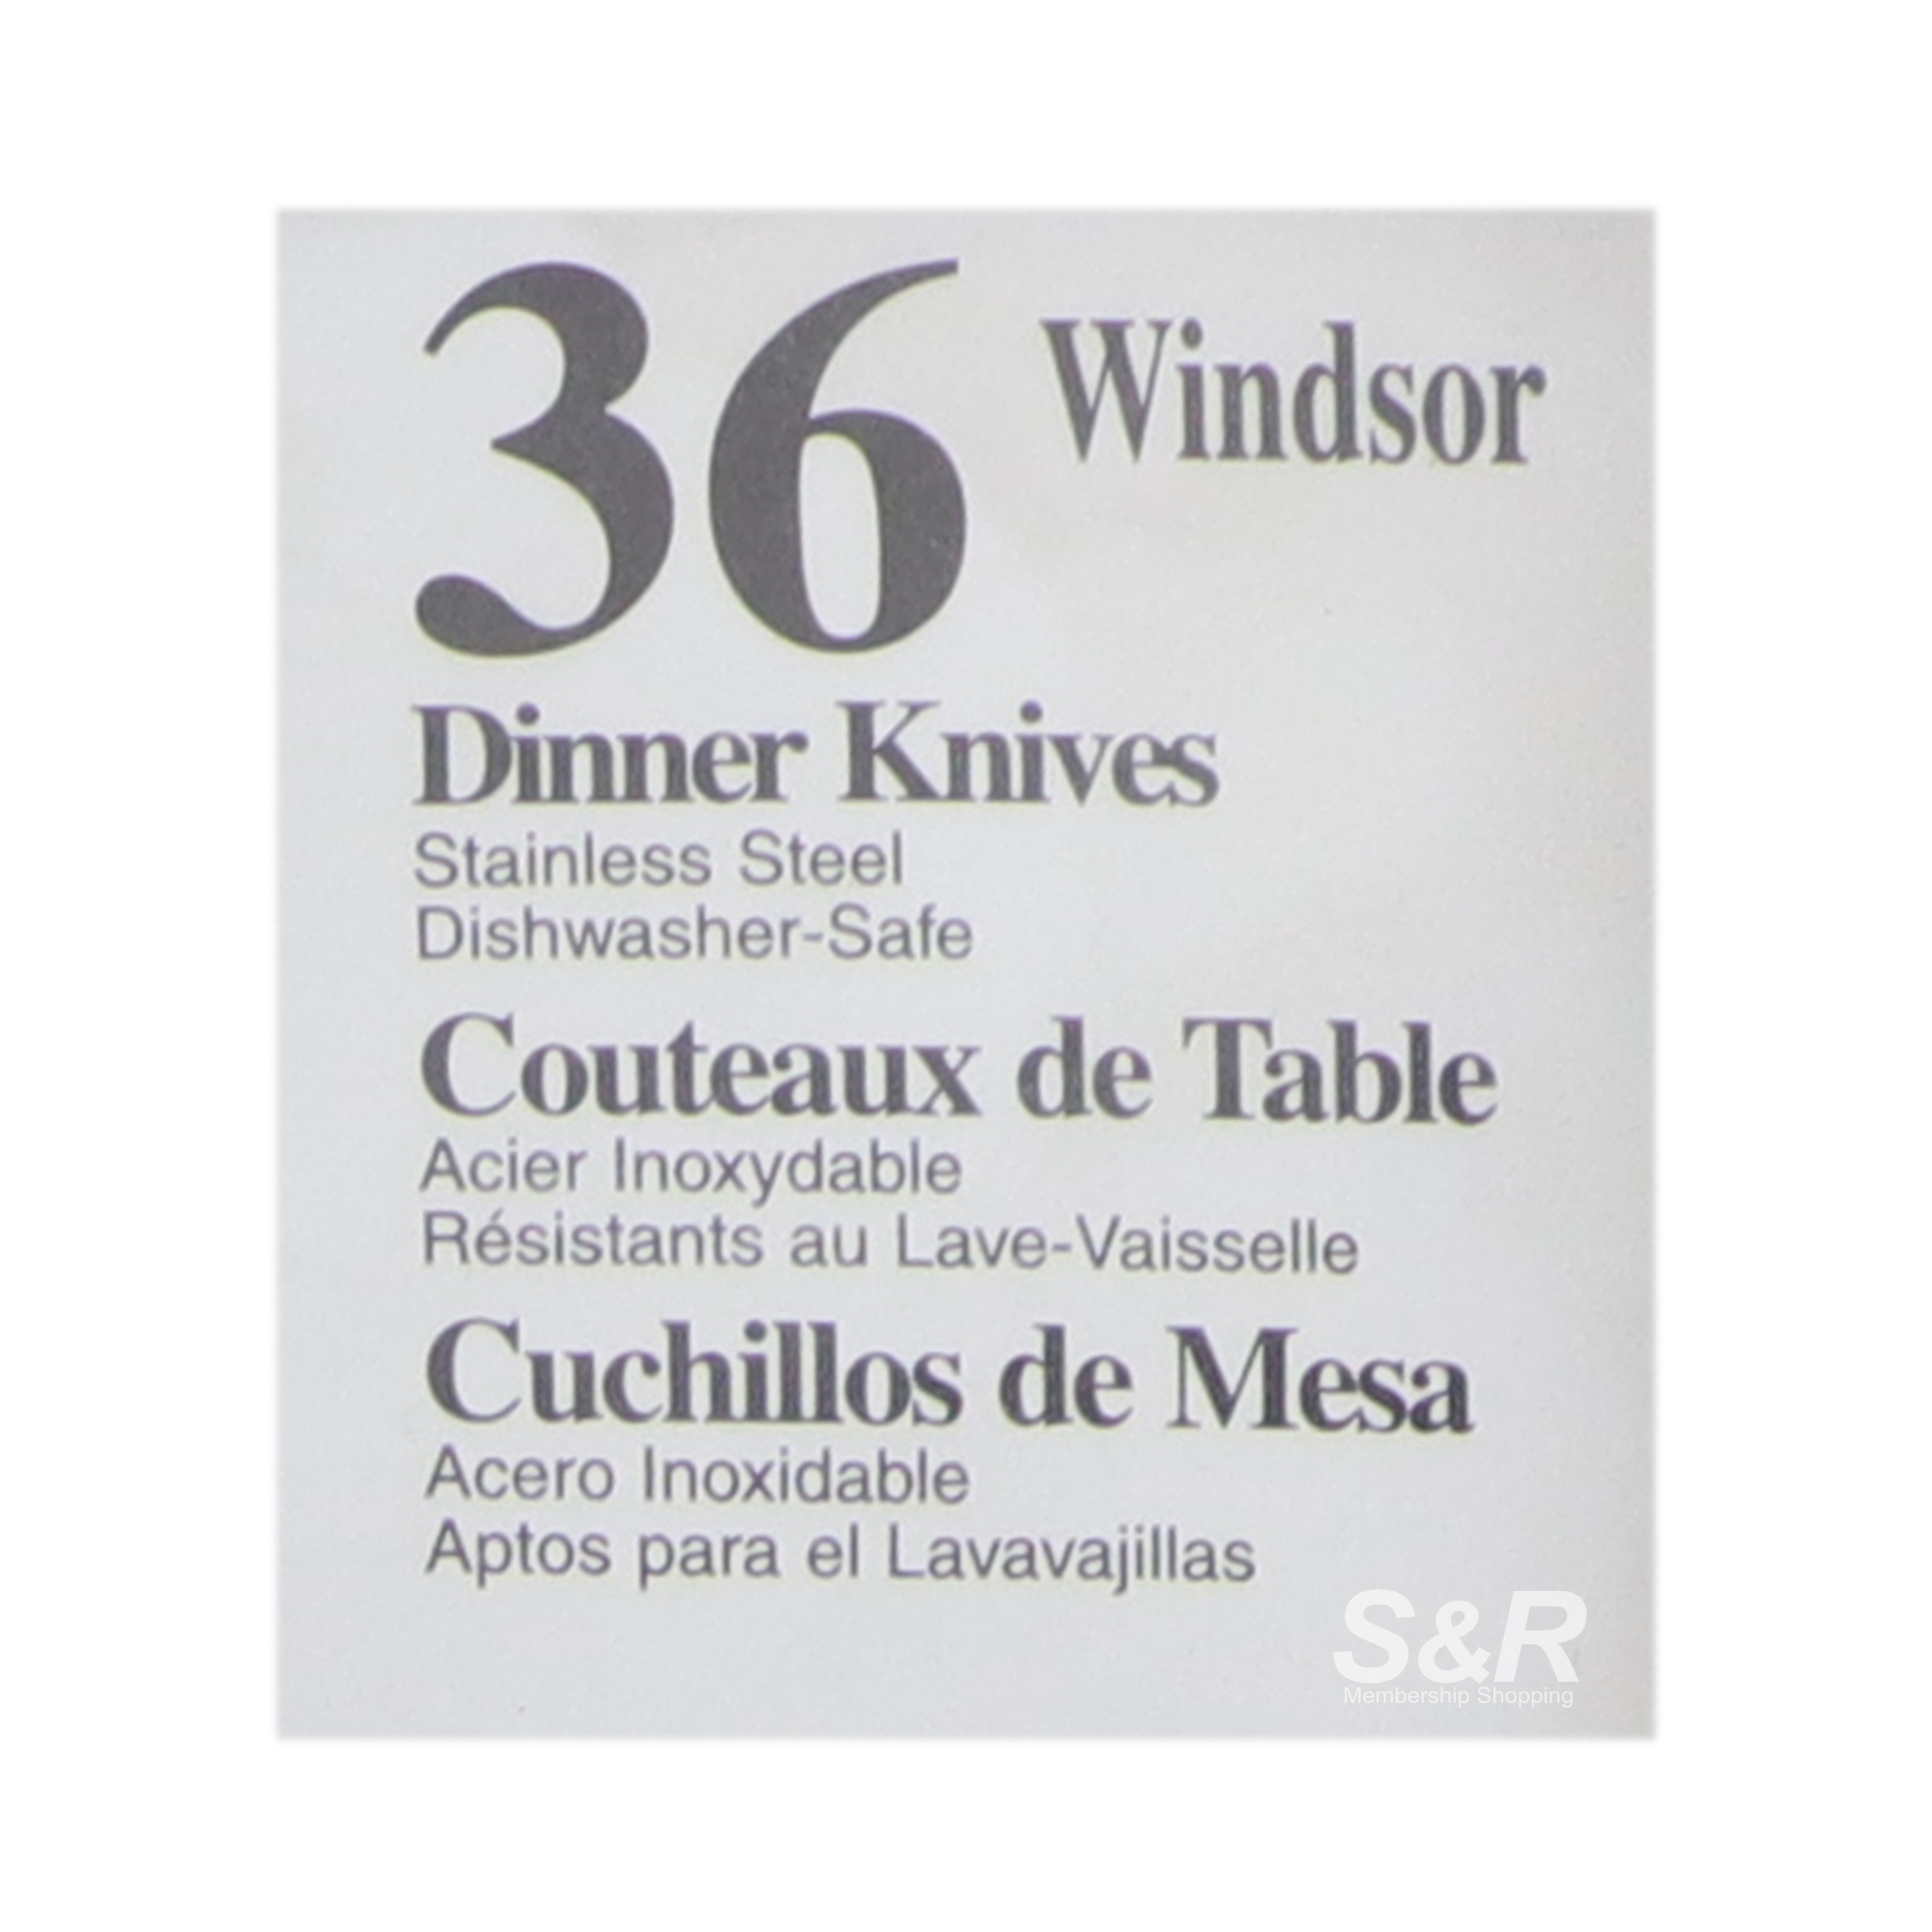 Dinner Knives